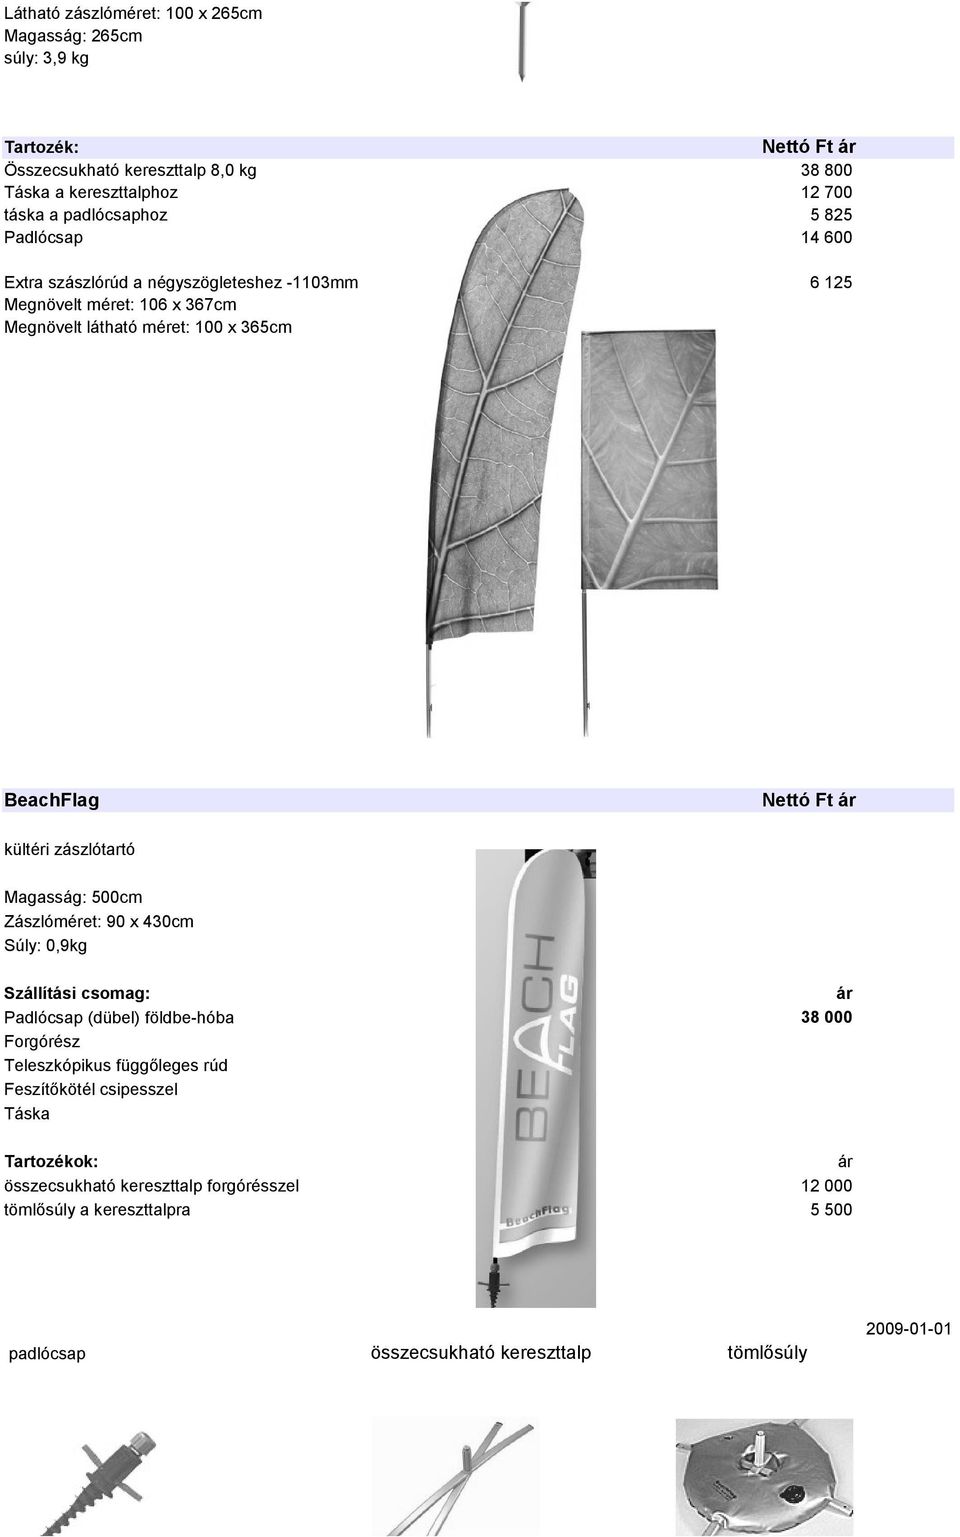 kültéri zászlótartó Magasság: 500cm Zászlóméret: 90 x 430cm : 0,9kg Szállítási csomag: Padlócsap (dübel) földbe-hóba Forgórész Teleszkópikus függőleges rúd